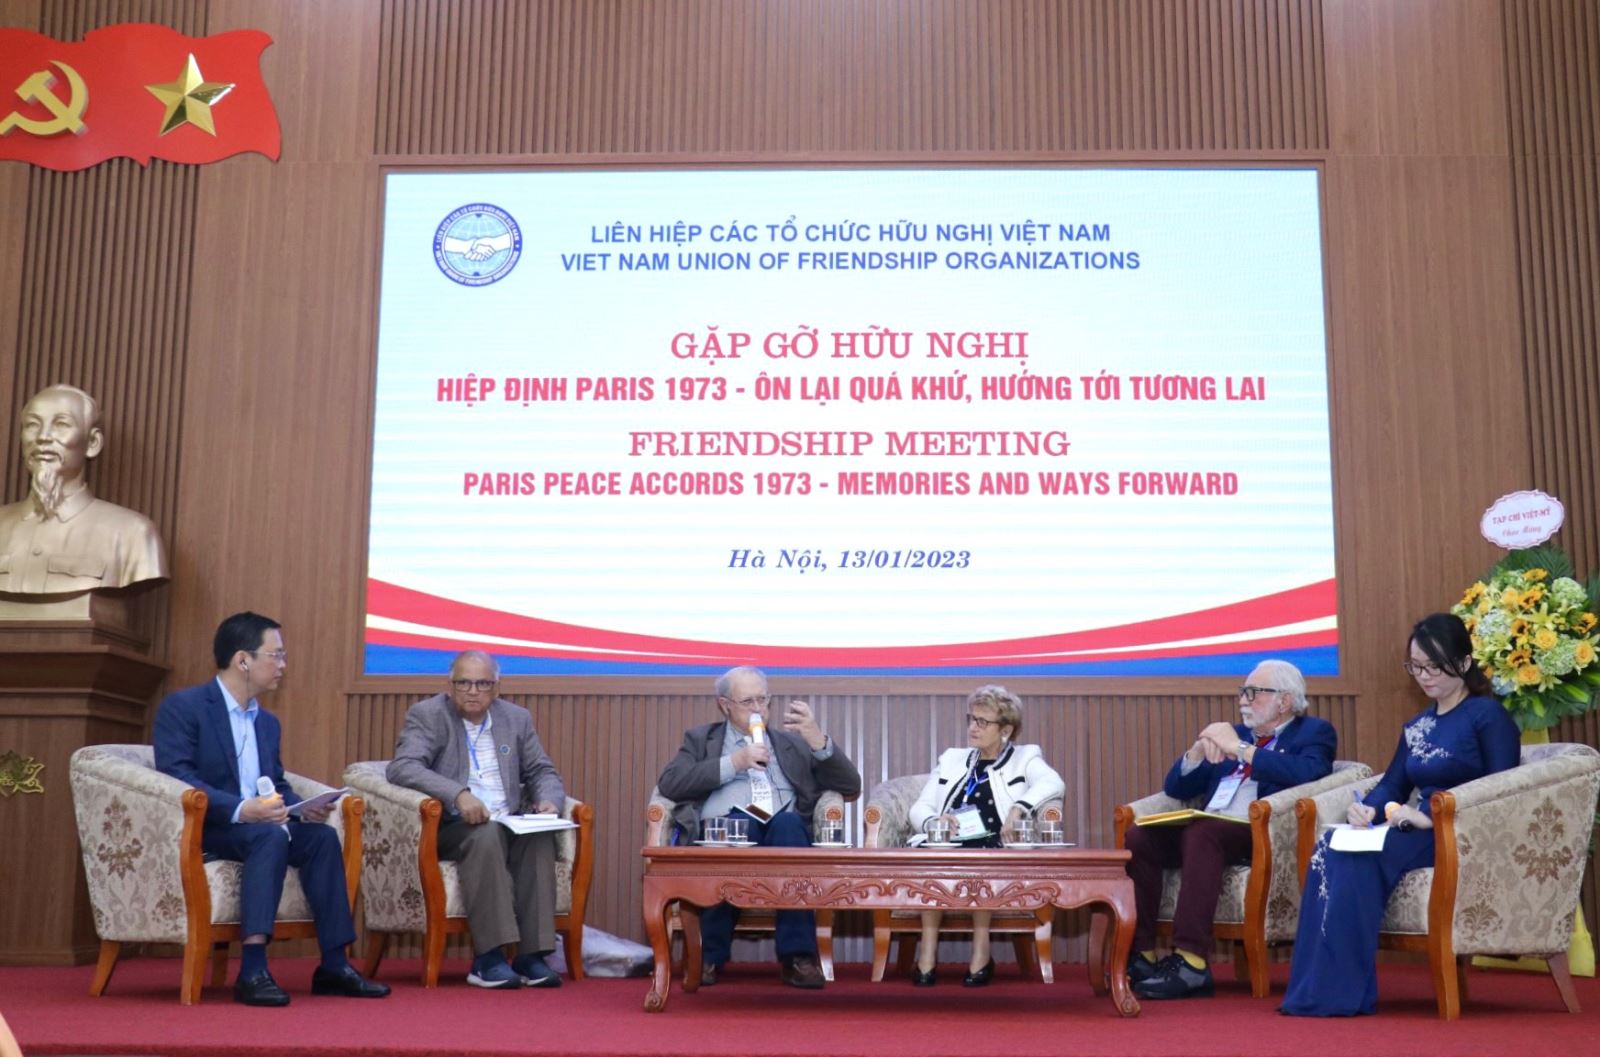 Kỷ niệm 50 năm Ngày ký Hiệp định Paris về chấm dứt chiến tranh, lập lại hòa bình ở Việt Nam